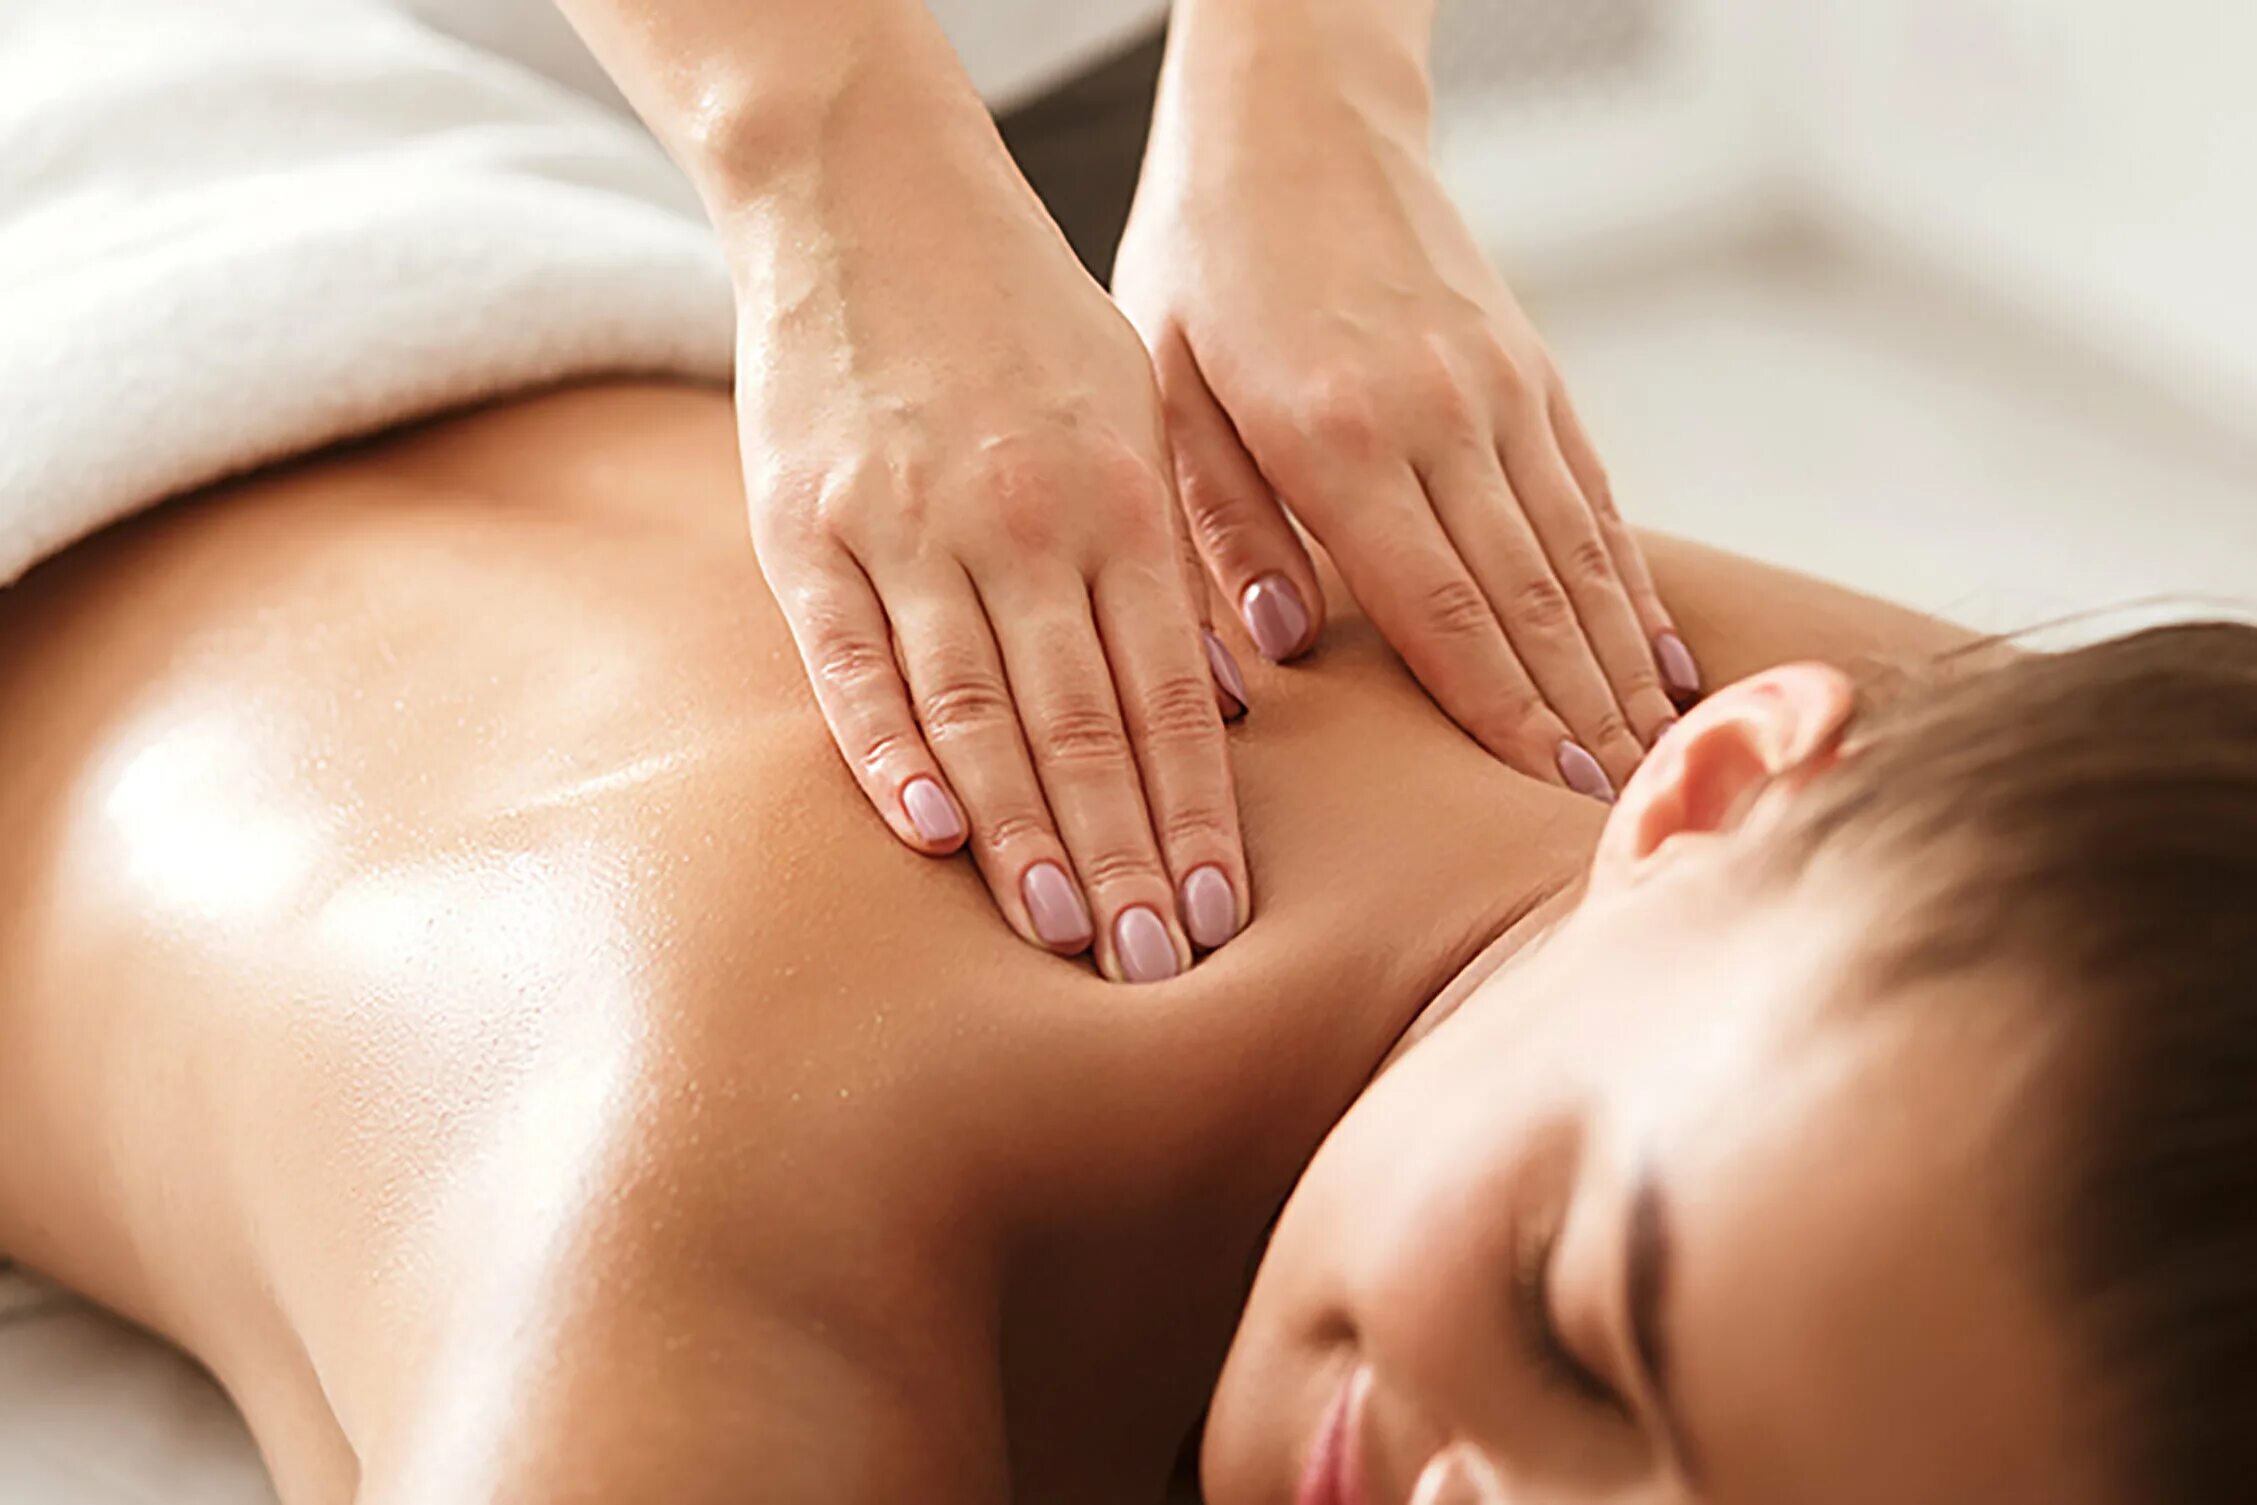 Intimate massage. Массаж картинки. Массаж спины. Комбинированный массаж тела. Ручной массаж.